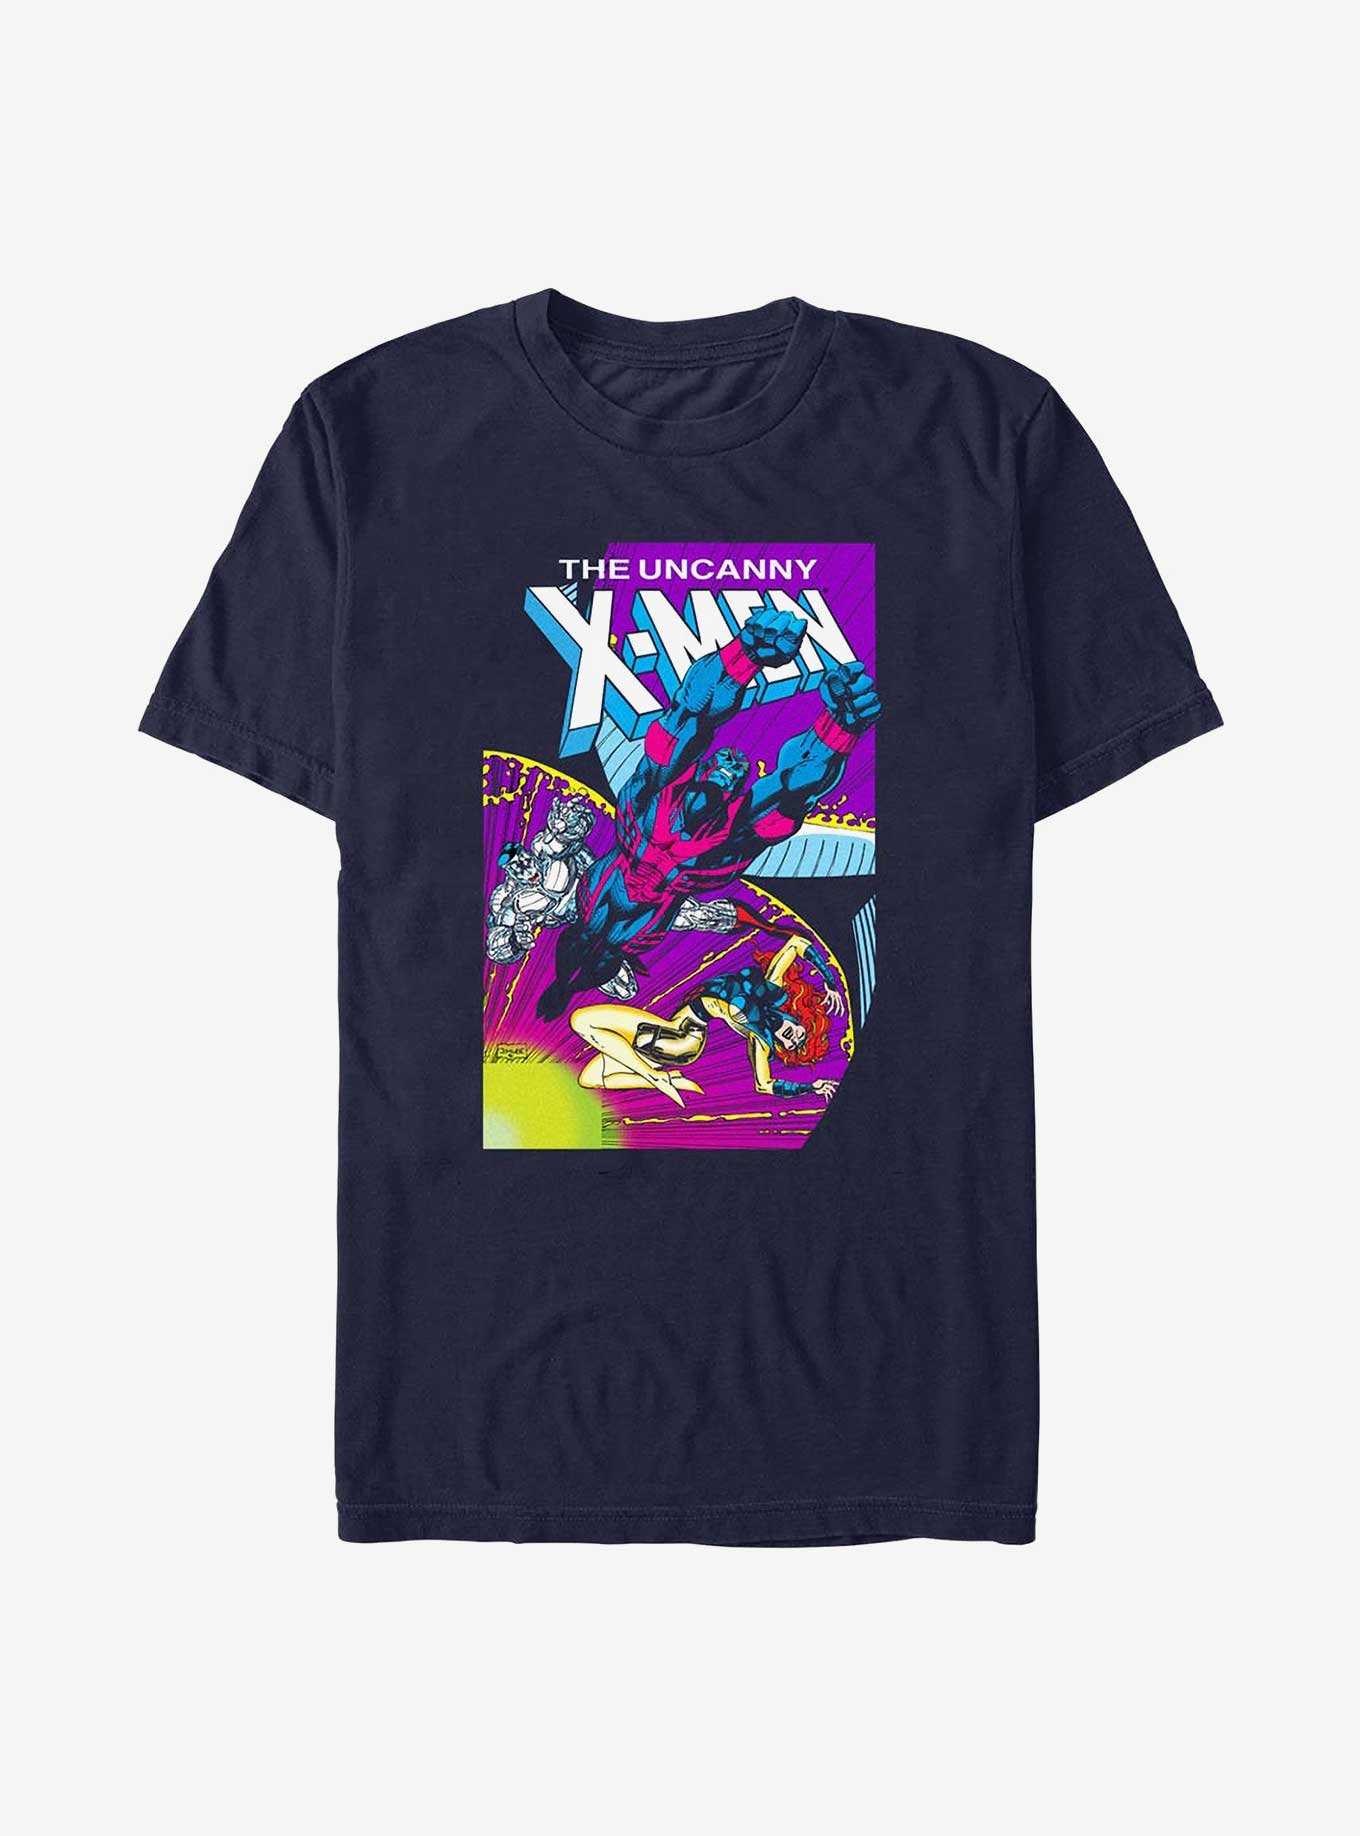 X-Men Archangel Flight T-Shirt, , hi-res